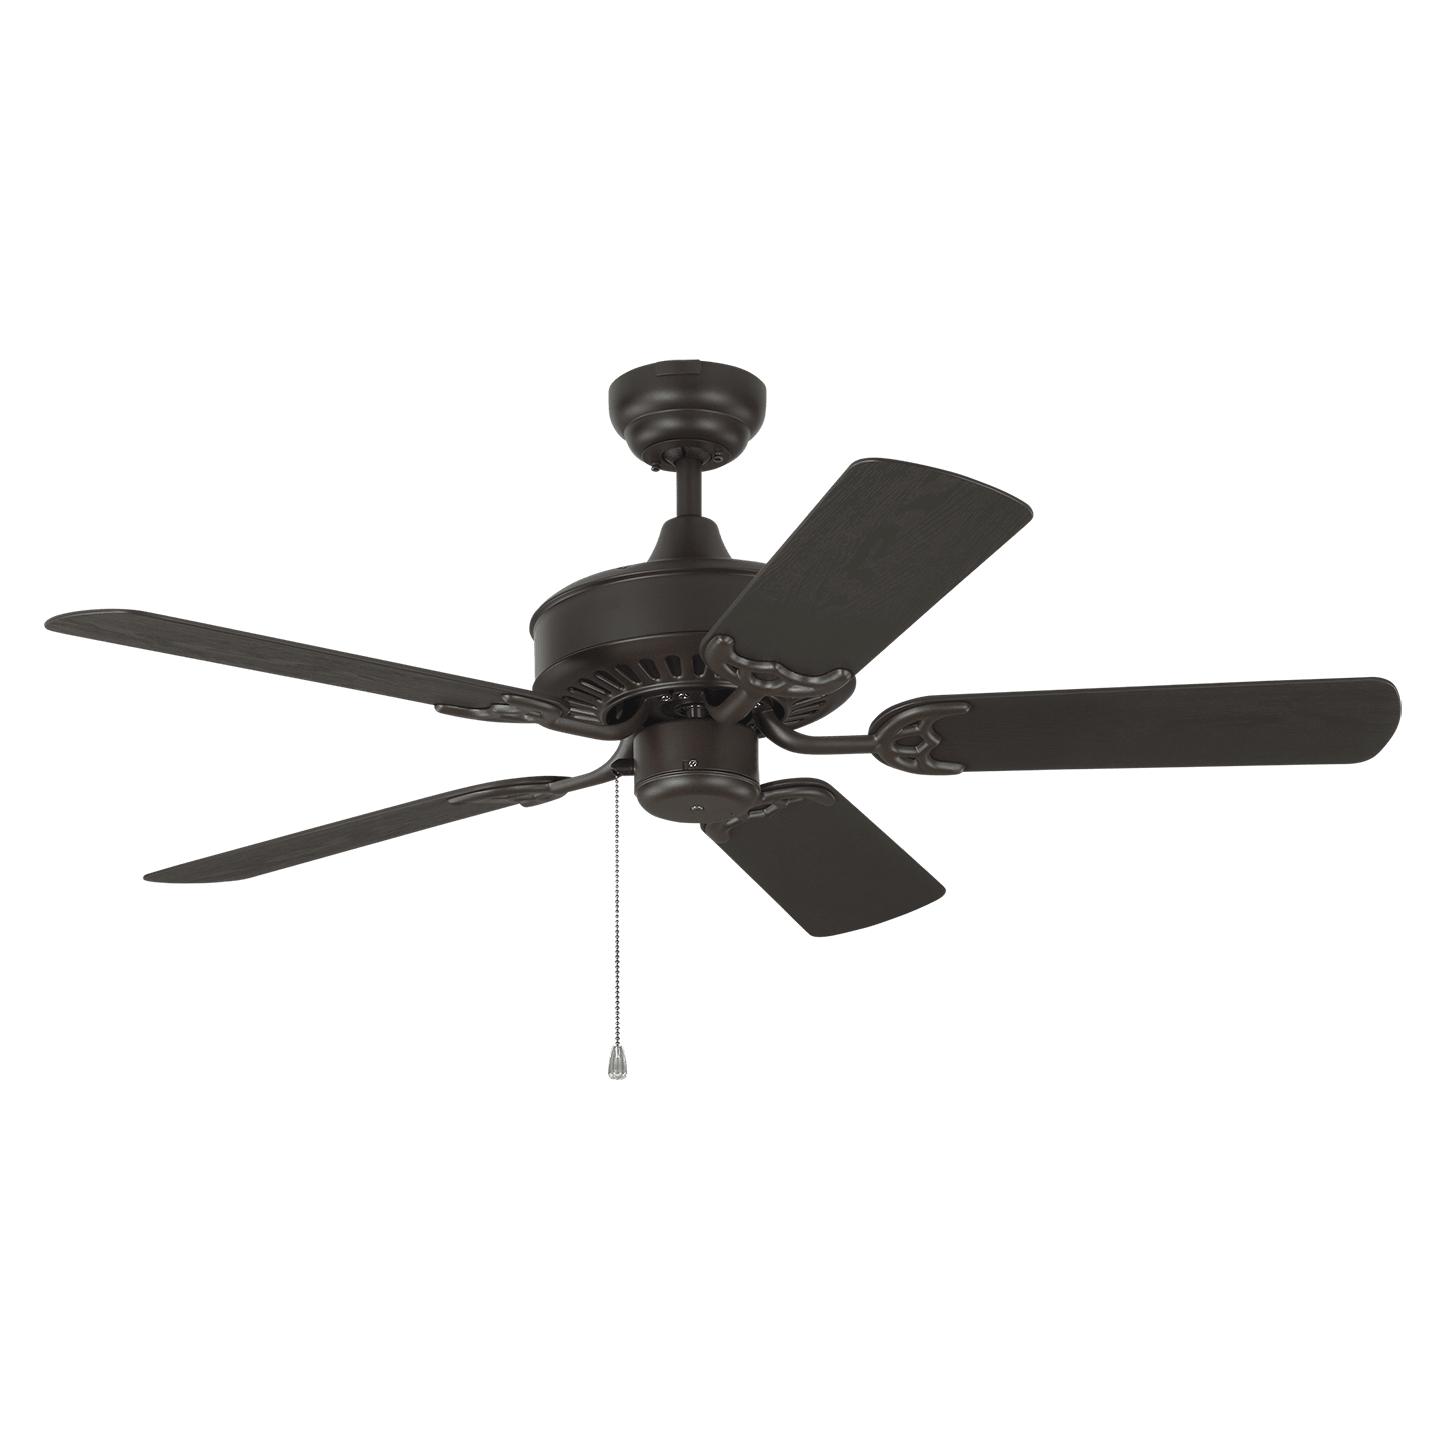 Купить Потолочный вентилятор Haven Outdoor 44" Ceiling Fan в интернет-магазине roooms.ru